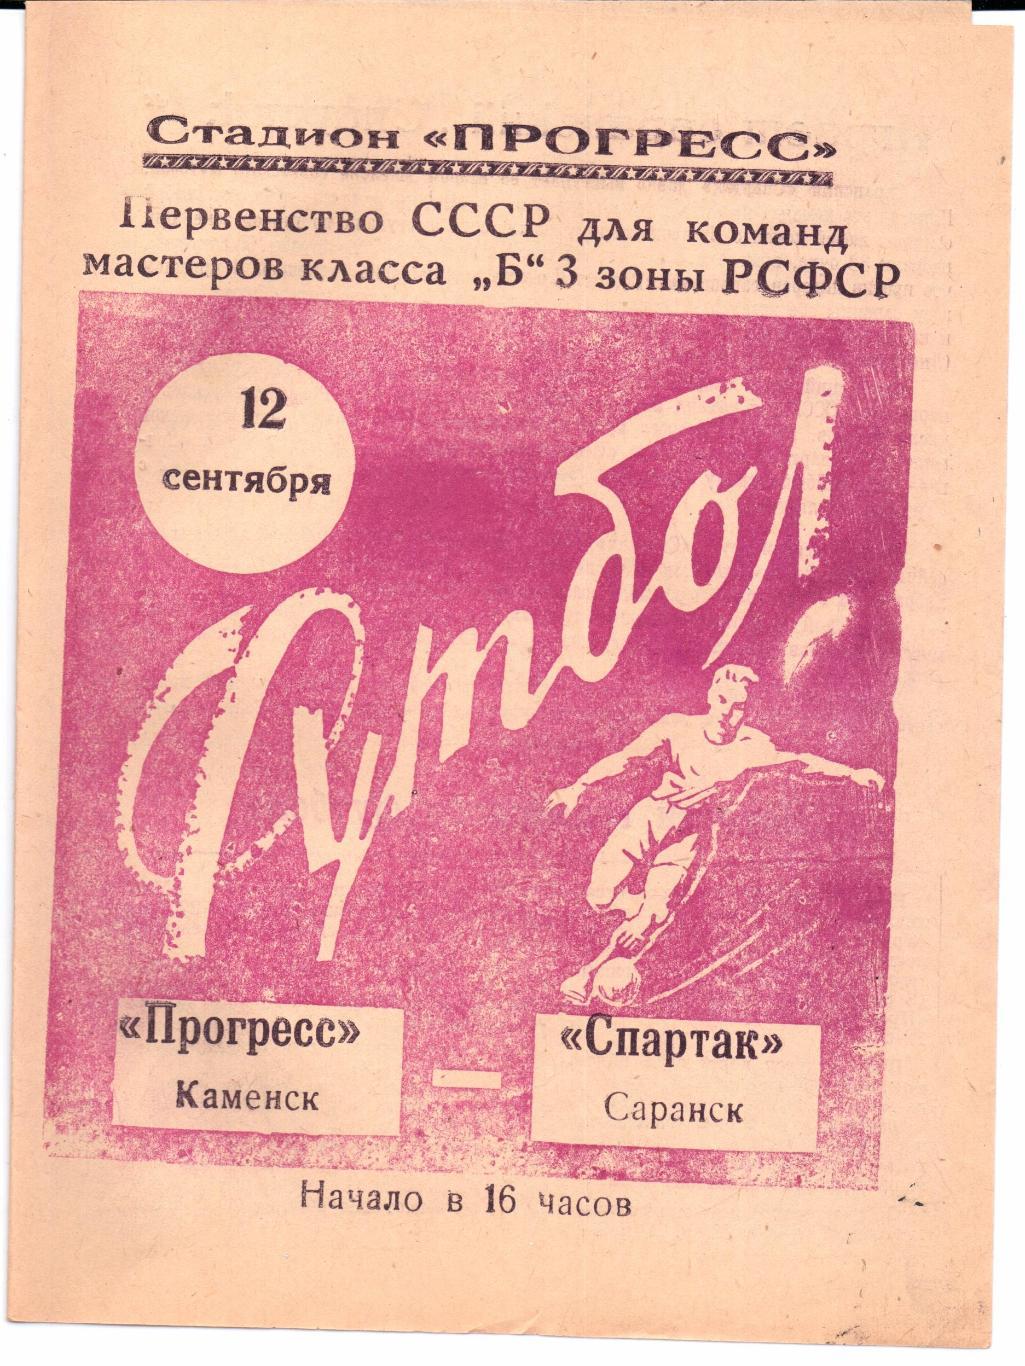 Класс Б 3-я зона Прогресс(Каменск)-Спартак(Са ранск)12.09.1965